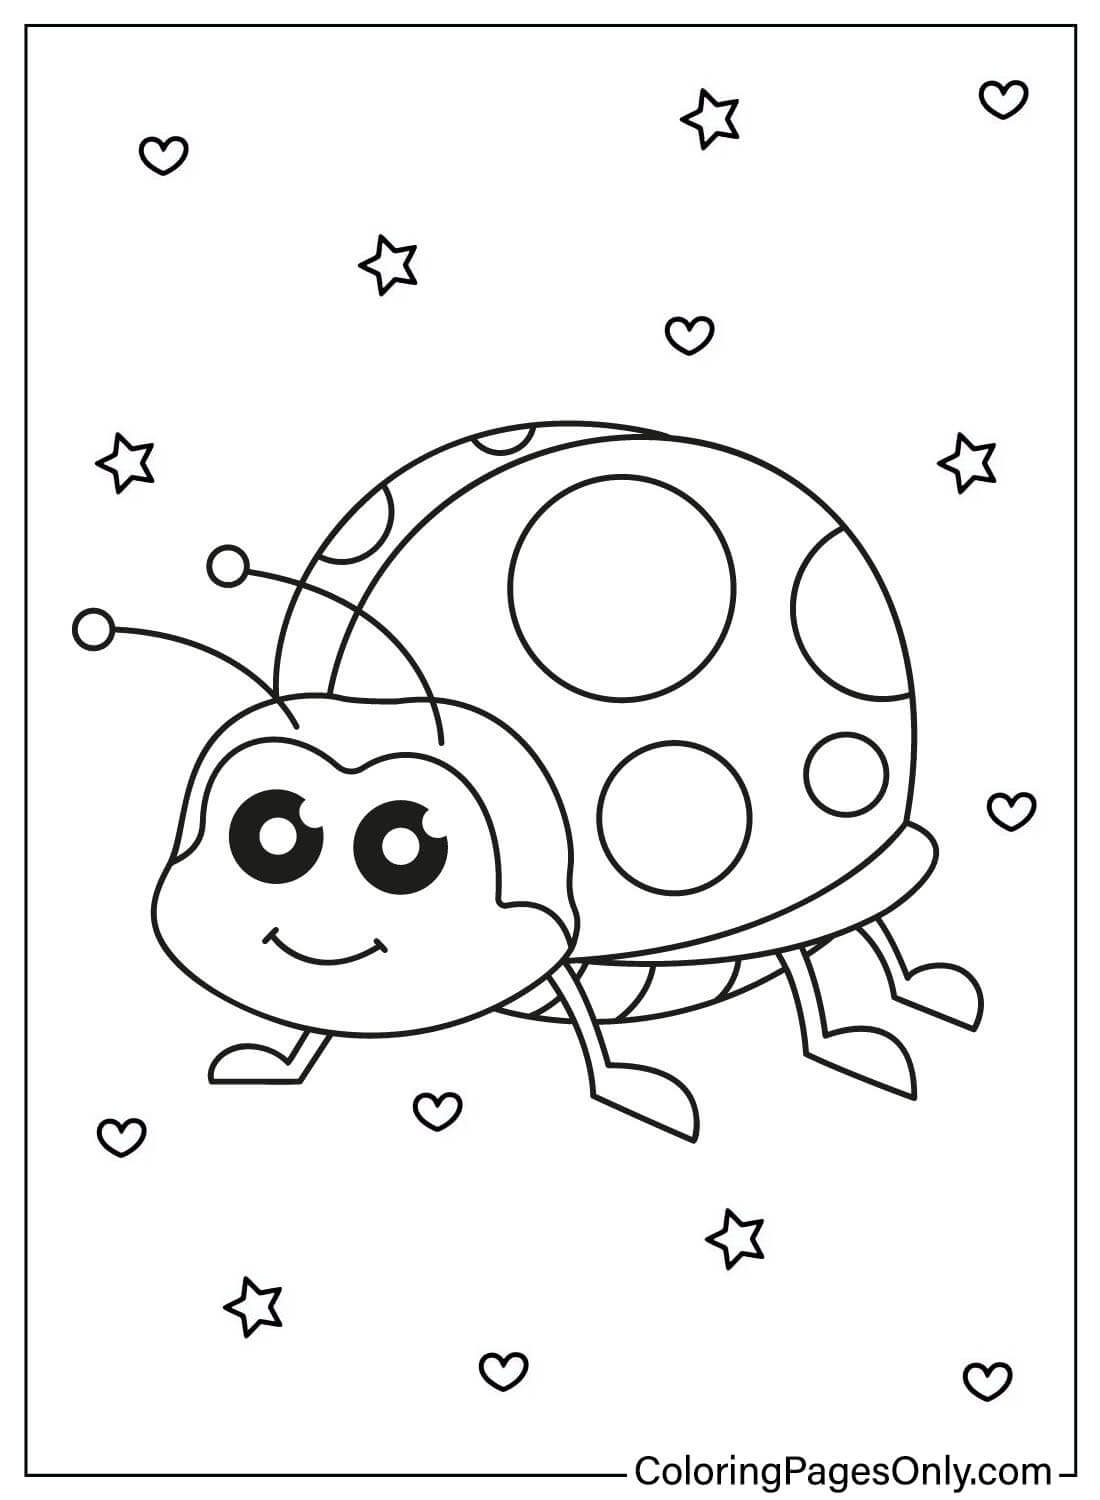 Página para colorear del contorno de Mariquita de Ladybug